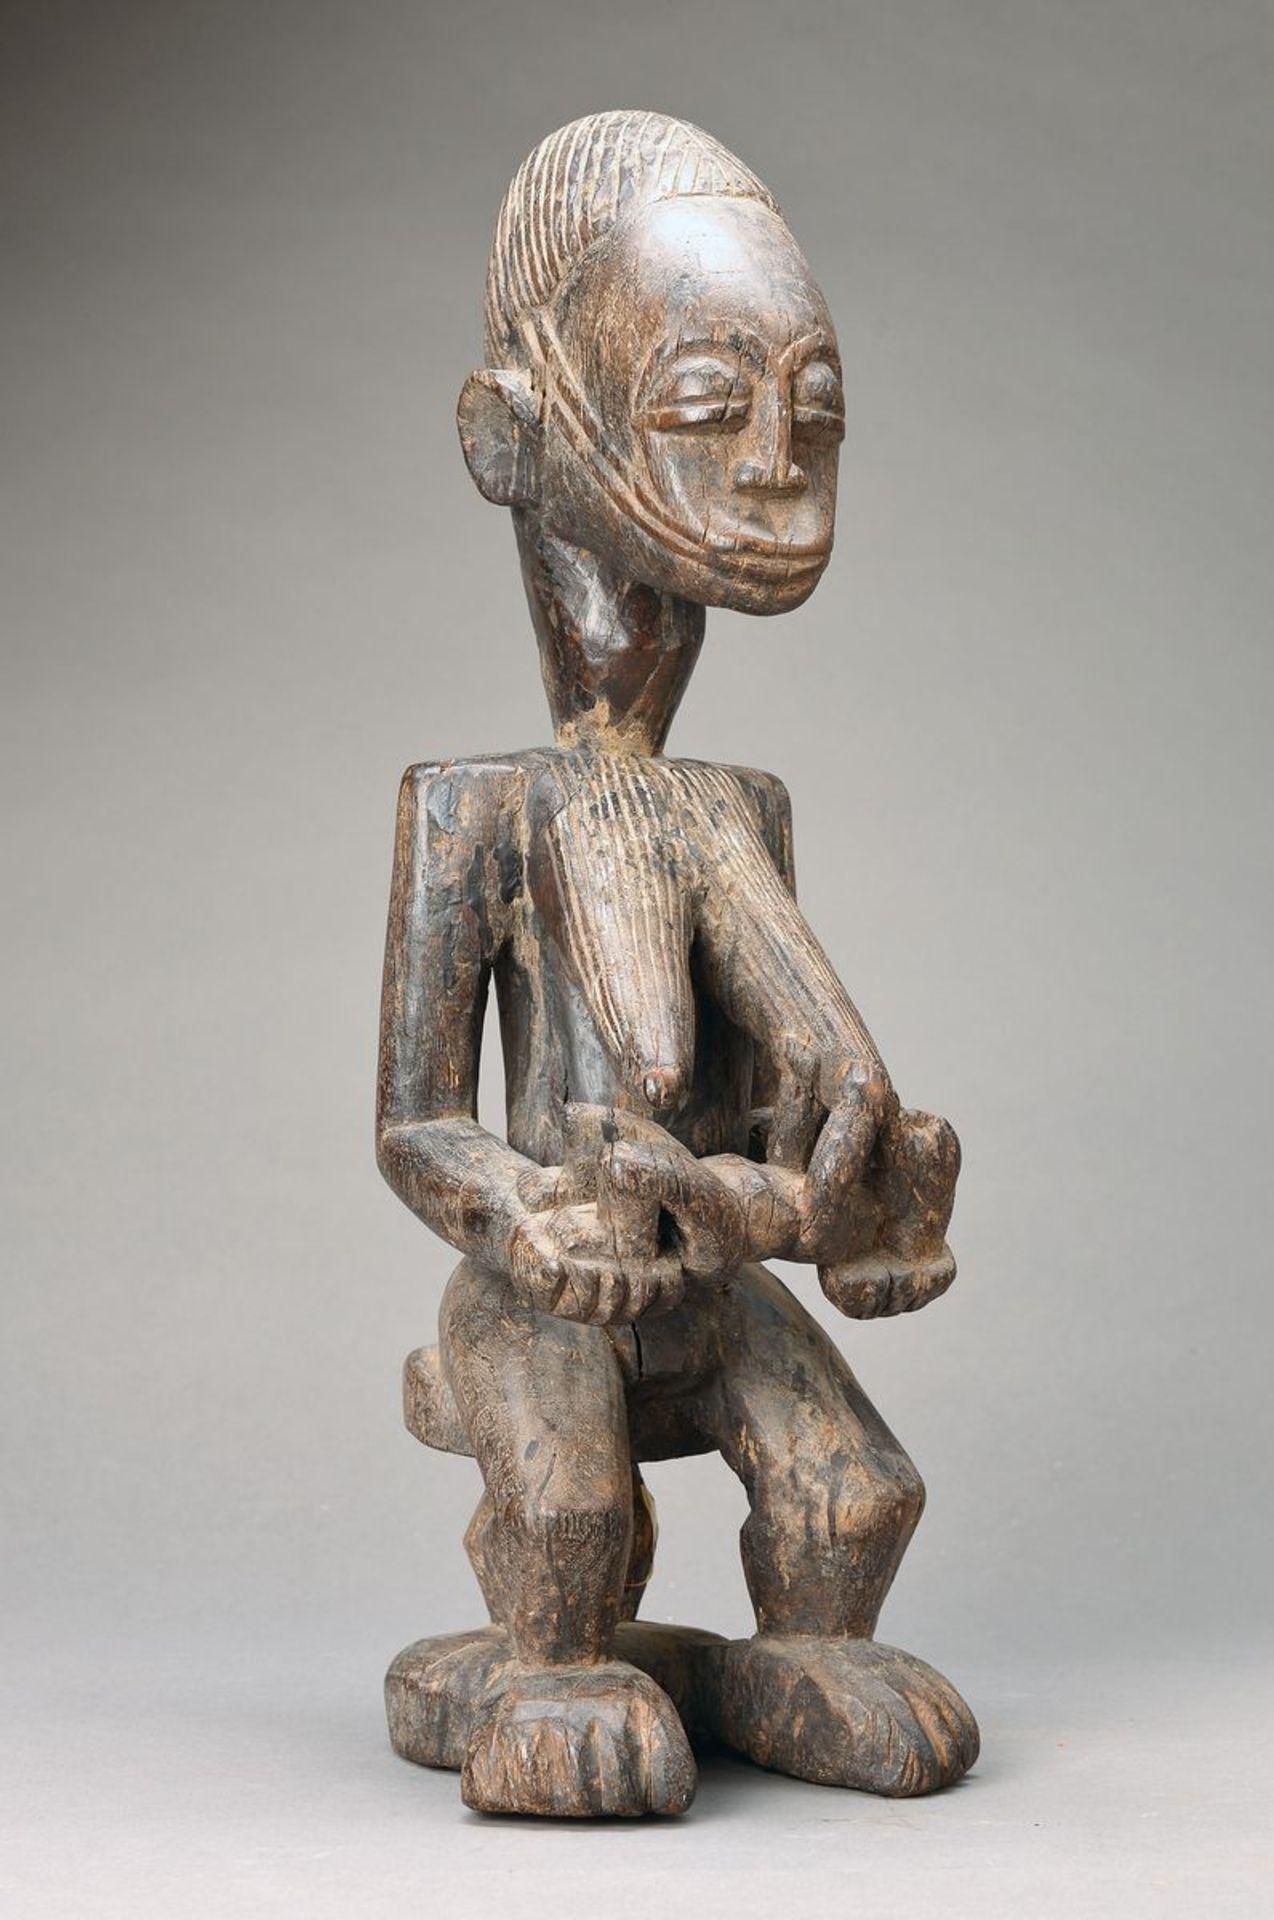 Stehende Frauenfigur mit Kind, wohl Mossi, Burkina Faso, ca. 40-50 Jahre alt , Hartholz aus einem